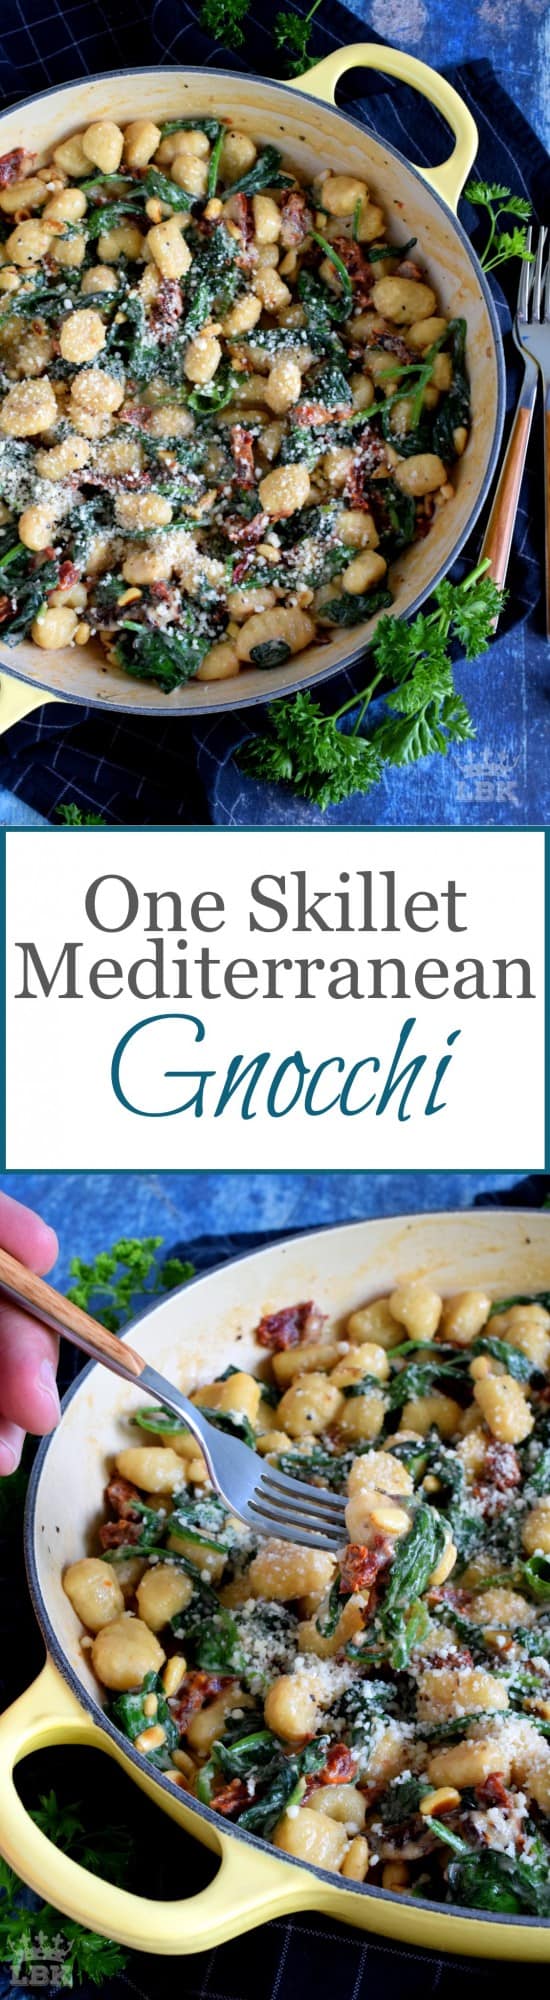 One Skillet Mediterranean Gnocchi